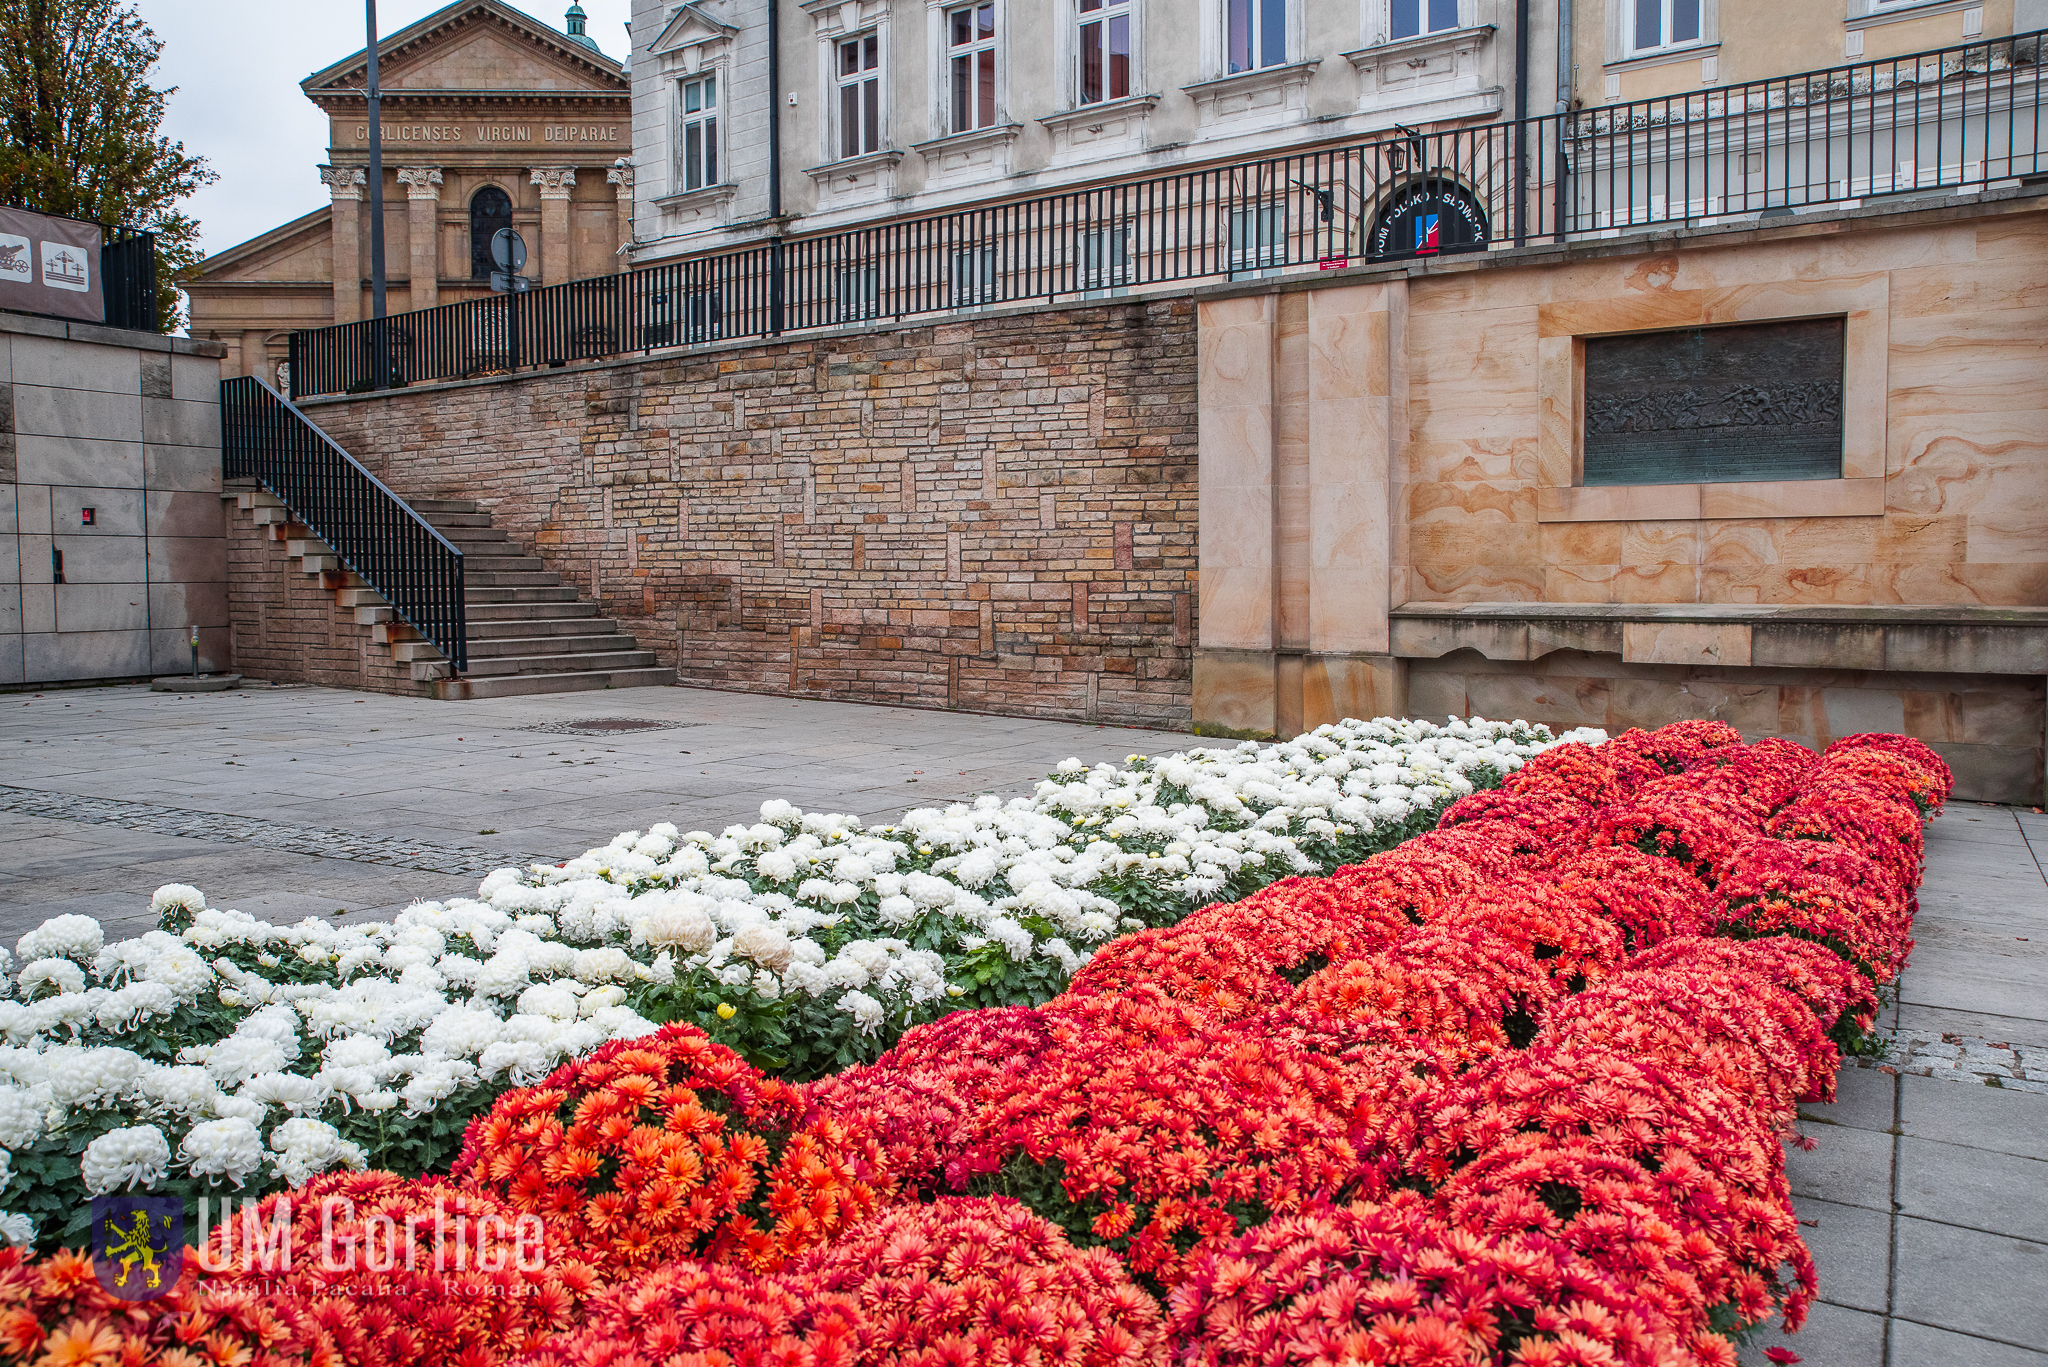 Rynek w Gorlicach - biało-czerwona kompozycja z kwiatów